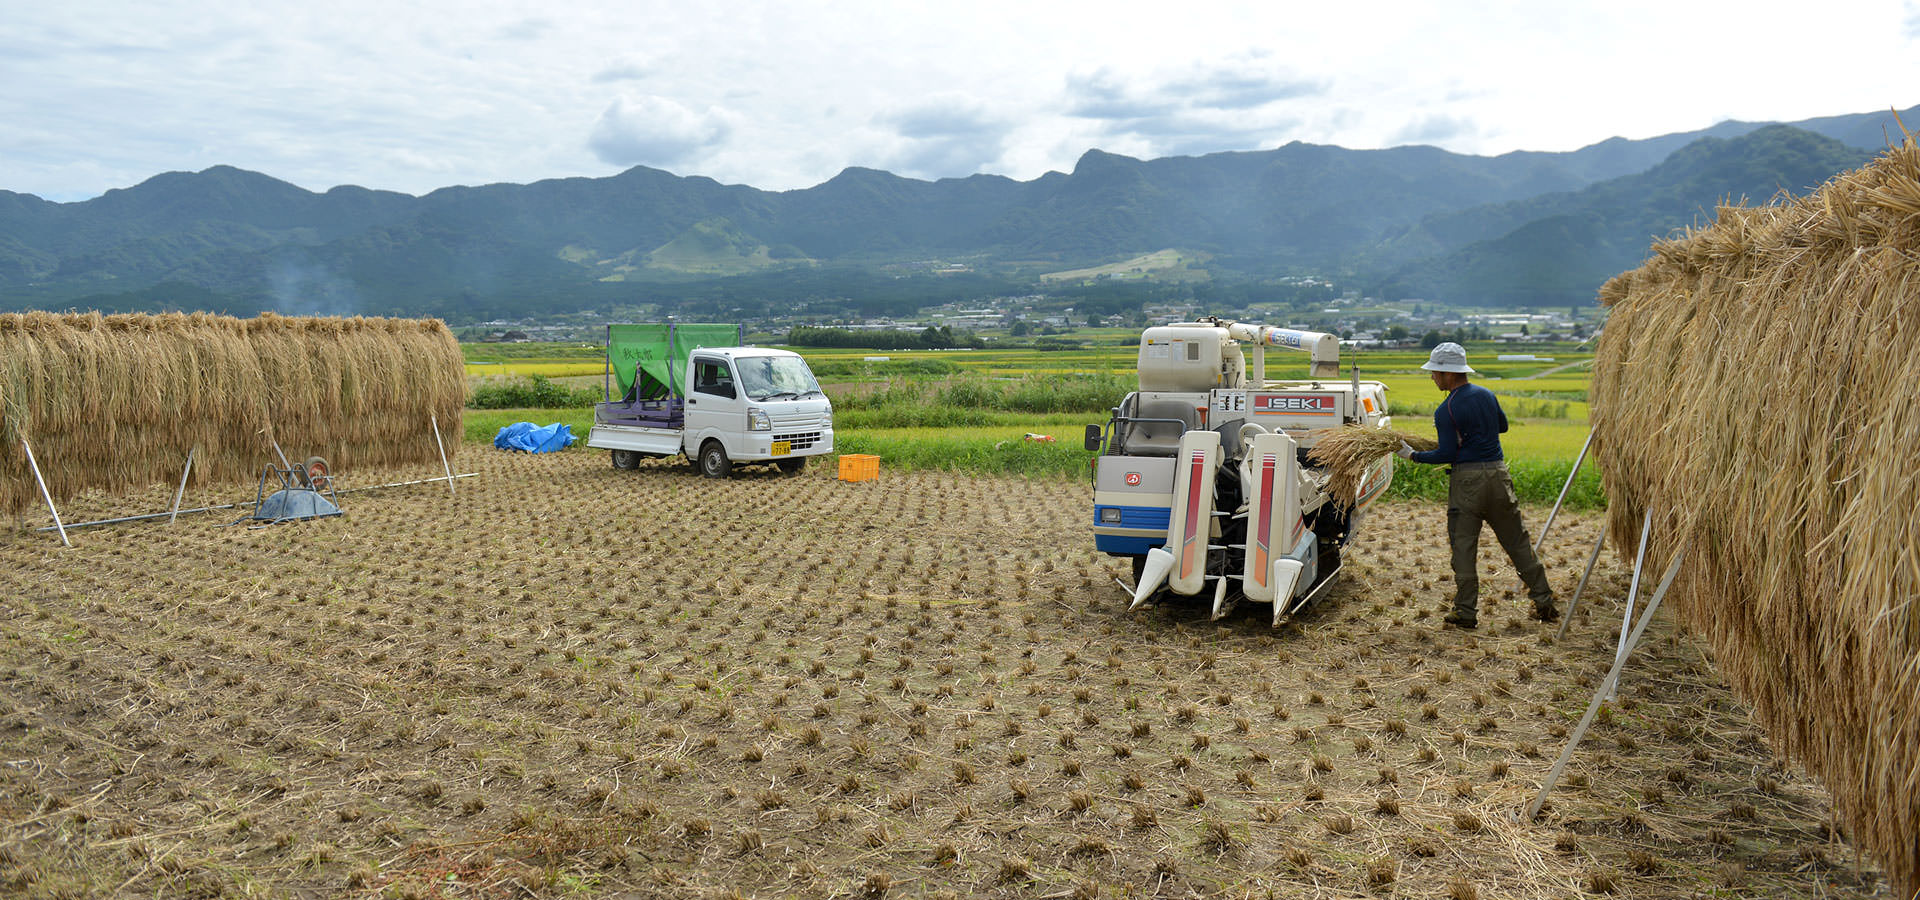 毛利秀幸さんが作る、無農薬・無施肥栽培米。